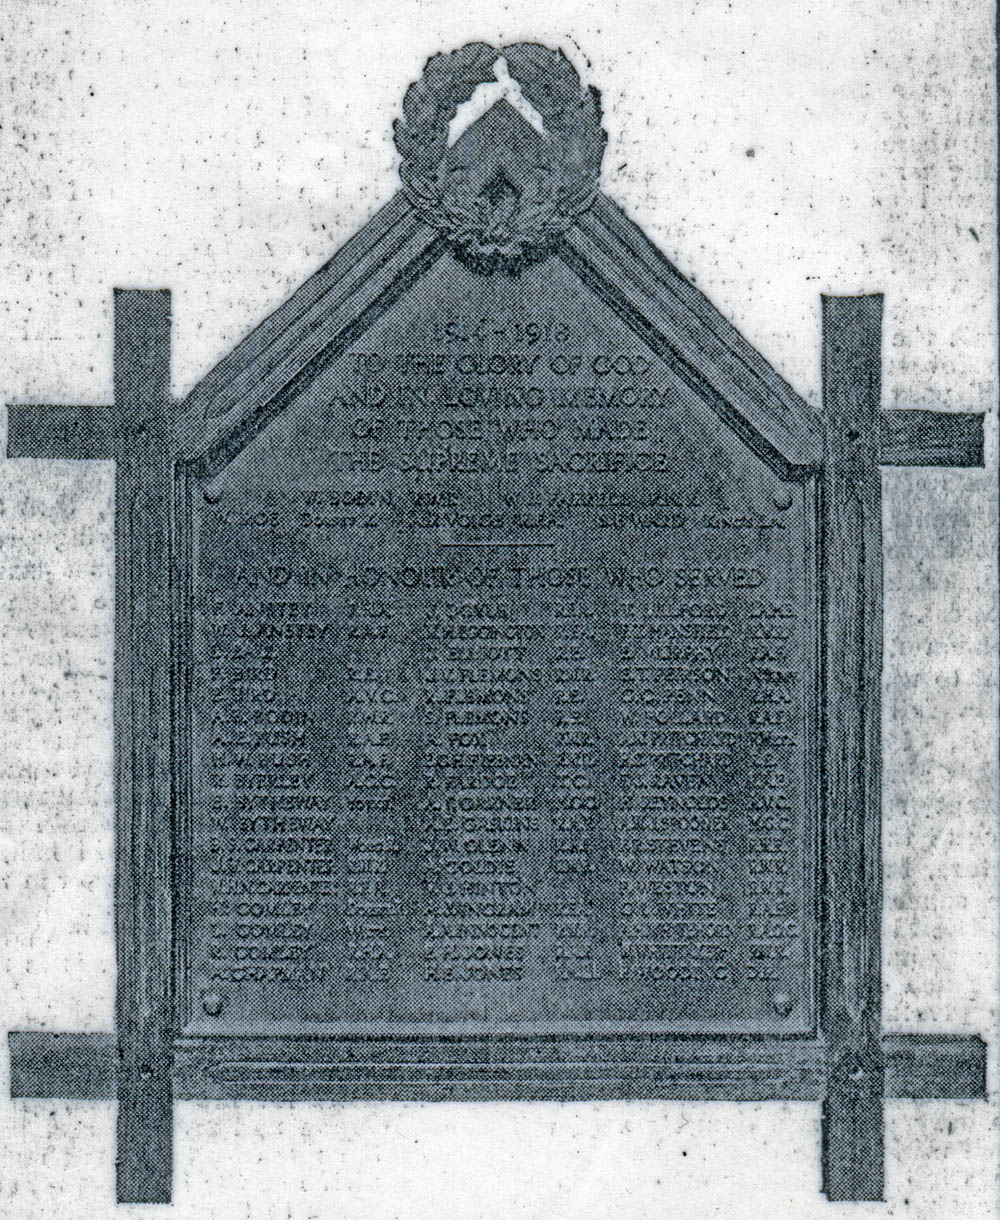 Memorial at St. Michael's Stoke